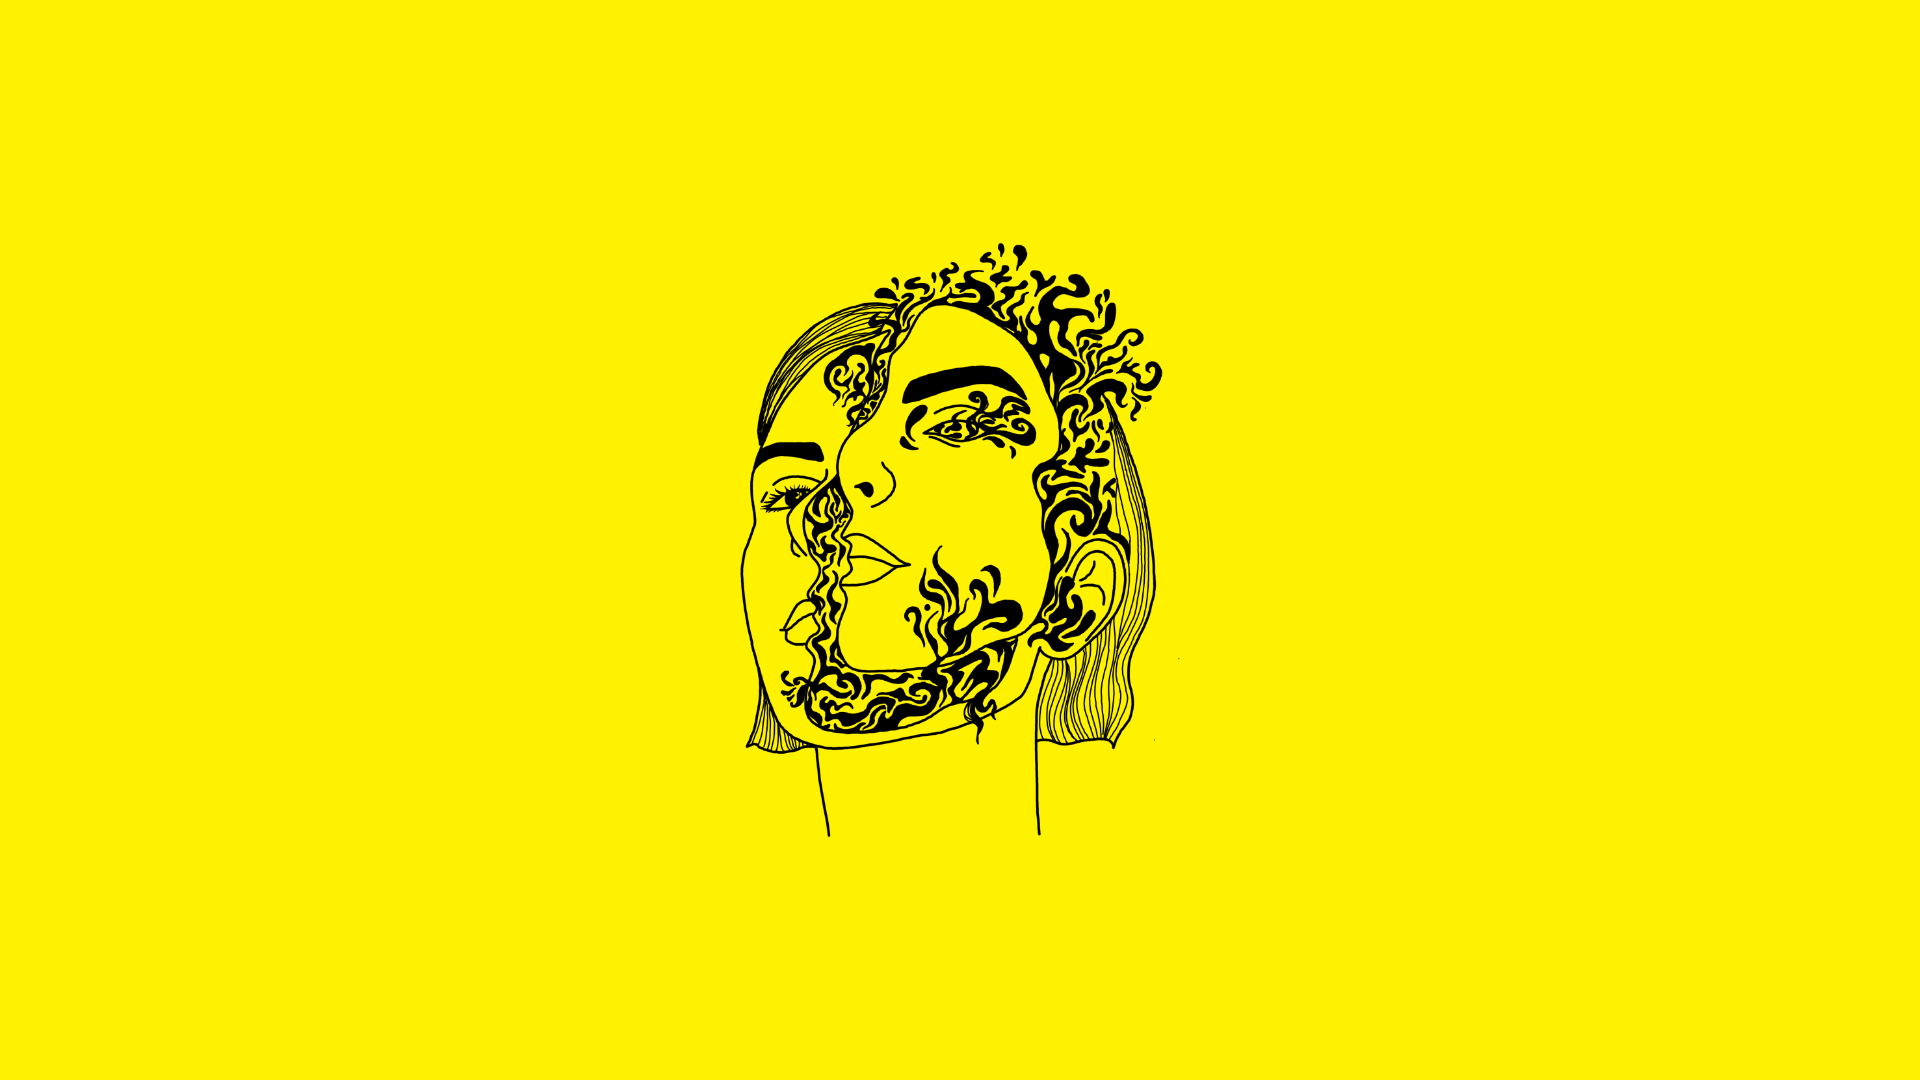 Abstrakcyjny rysunek twarzy kobiety z kwiatami na żółtym tle